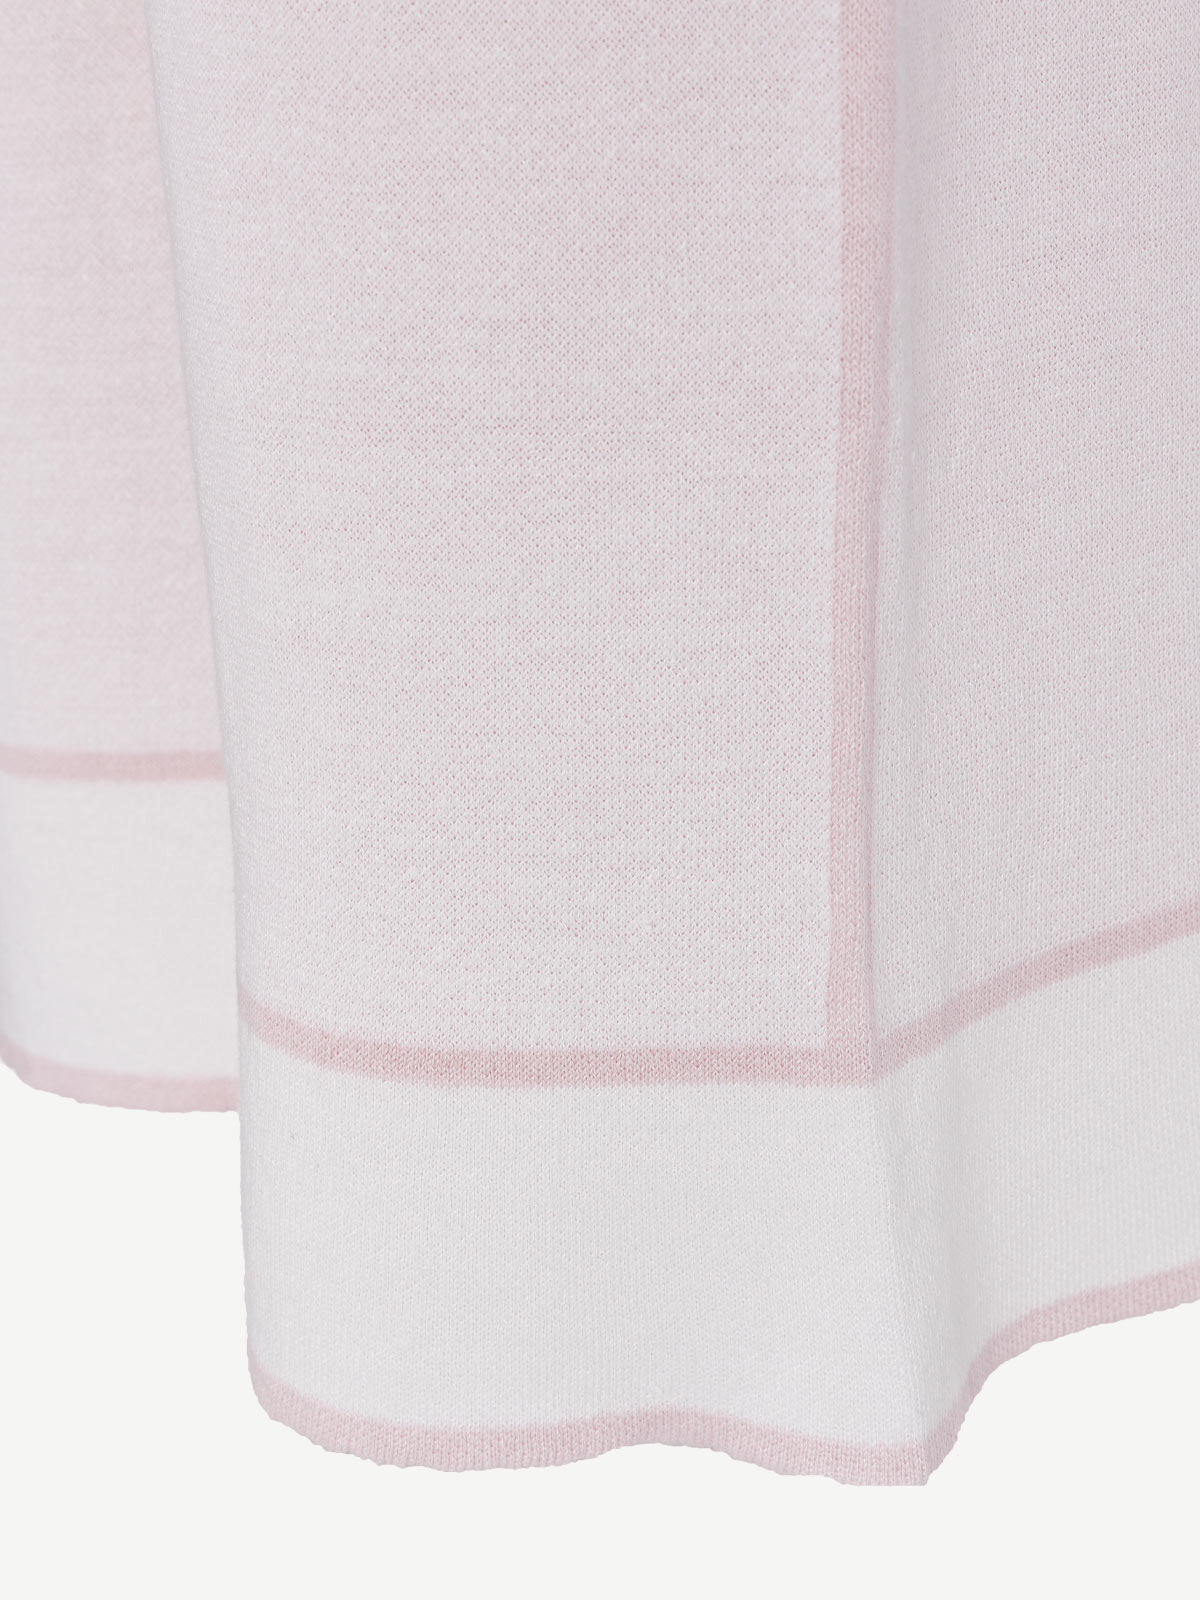 Kimono Pants fot woman 100% Capri white and pink linen pant detail